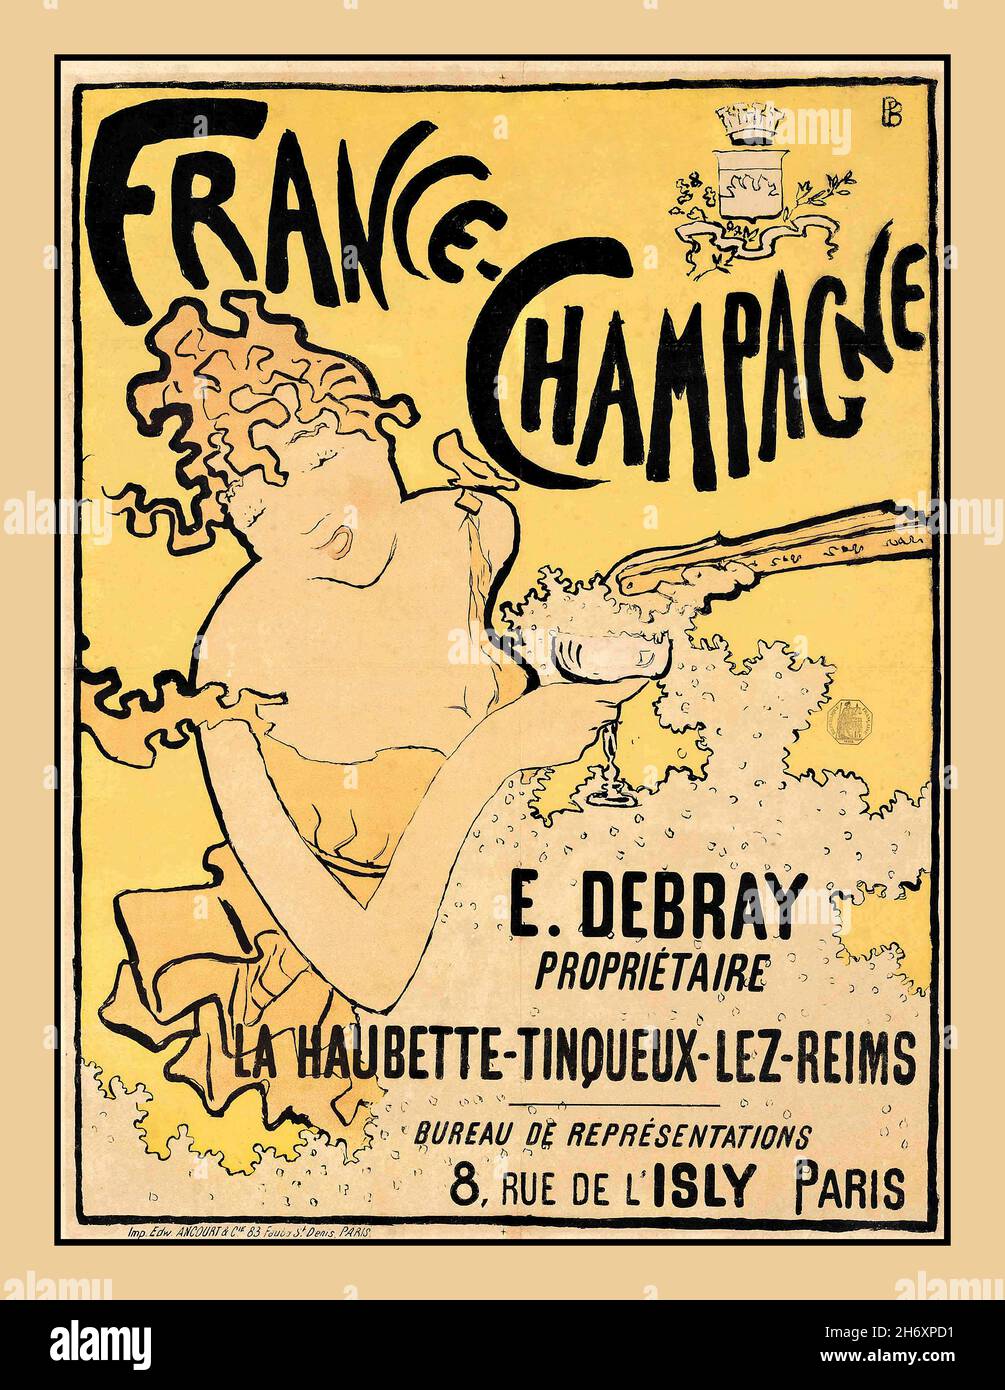 FRANKREICH CHAMPAGNER BONNARD Vintage Art Deco ‘France Champagne’ La Haubette-Tinqueux- Le Reims Poster in einem extravaganten Art Deco Pariser Stil Künstler Pierre Bonnard (1867–1947) Plakat-Kunstwerbewerbung für Debray Champagne, 1891 Stockfoto